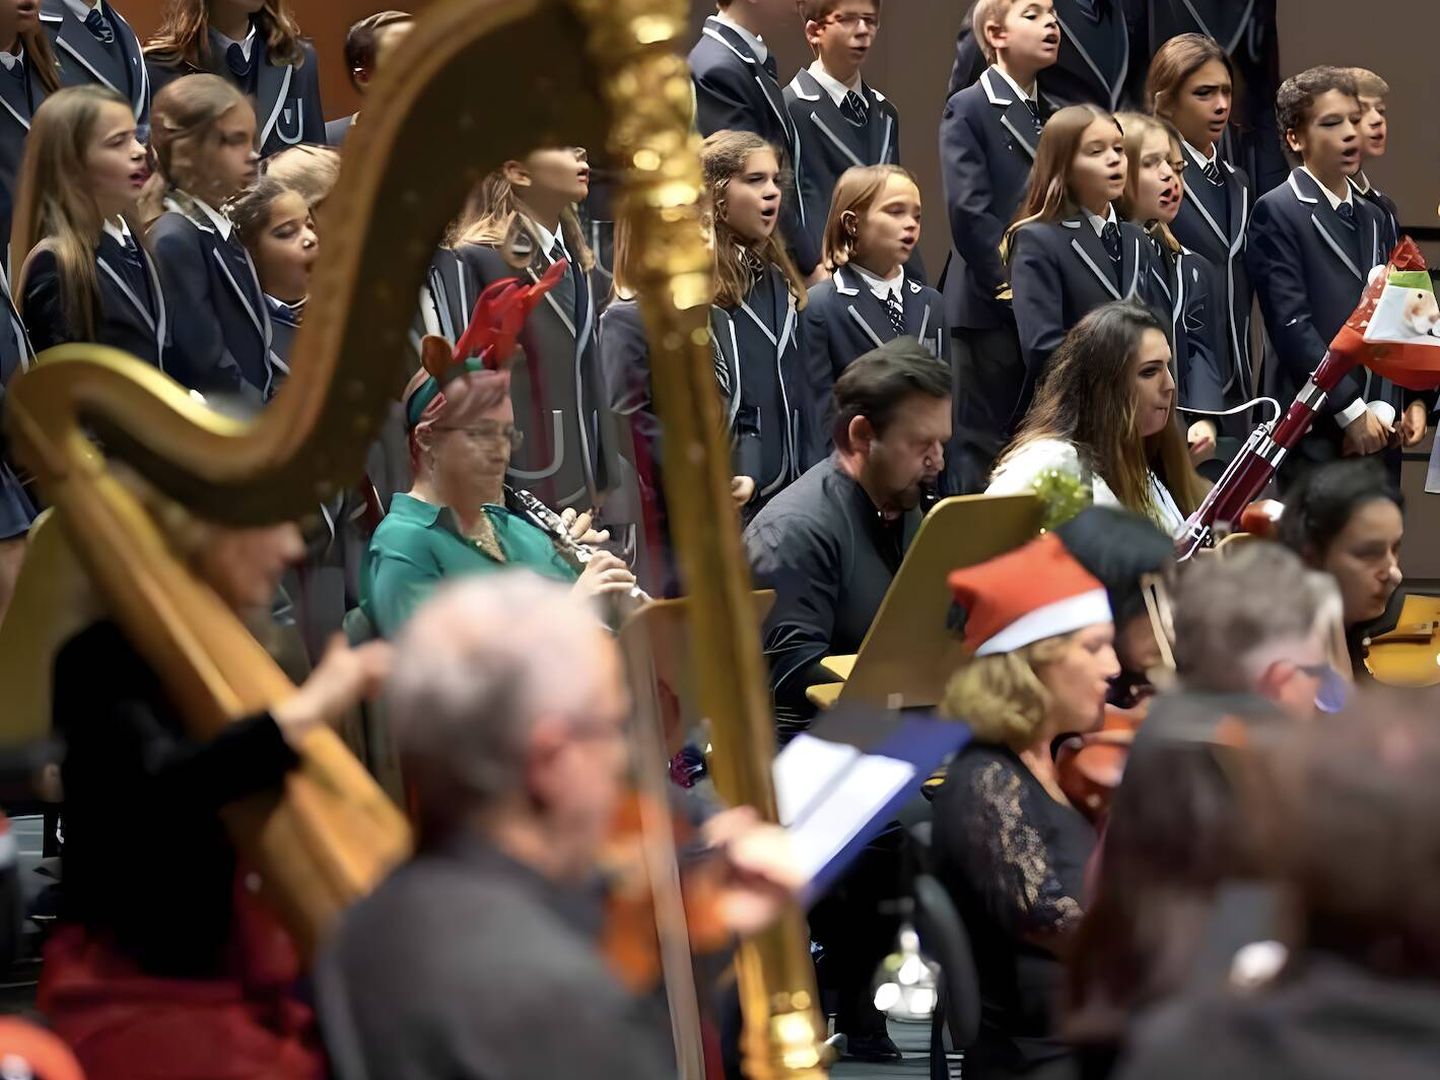 La orquesta sinfónica entona ritmos festivos en sus conciertos navideños estos días. (Cortesía)